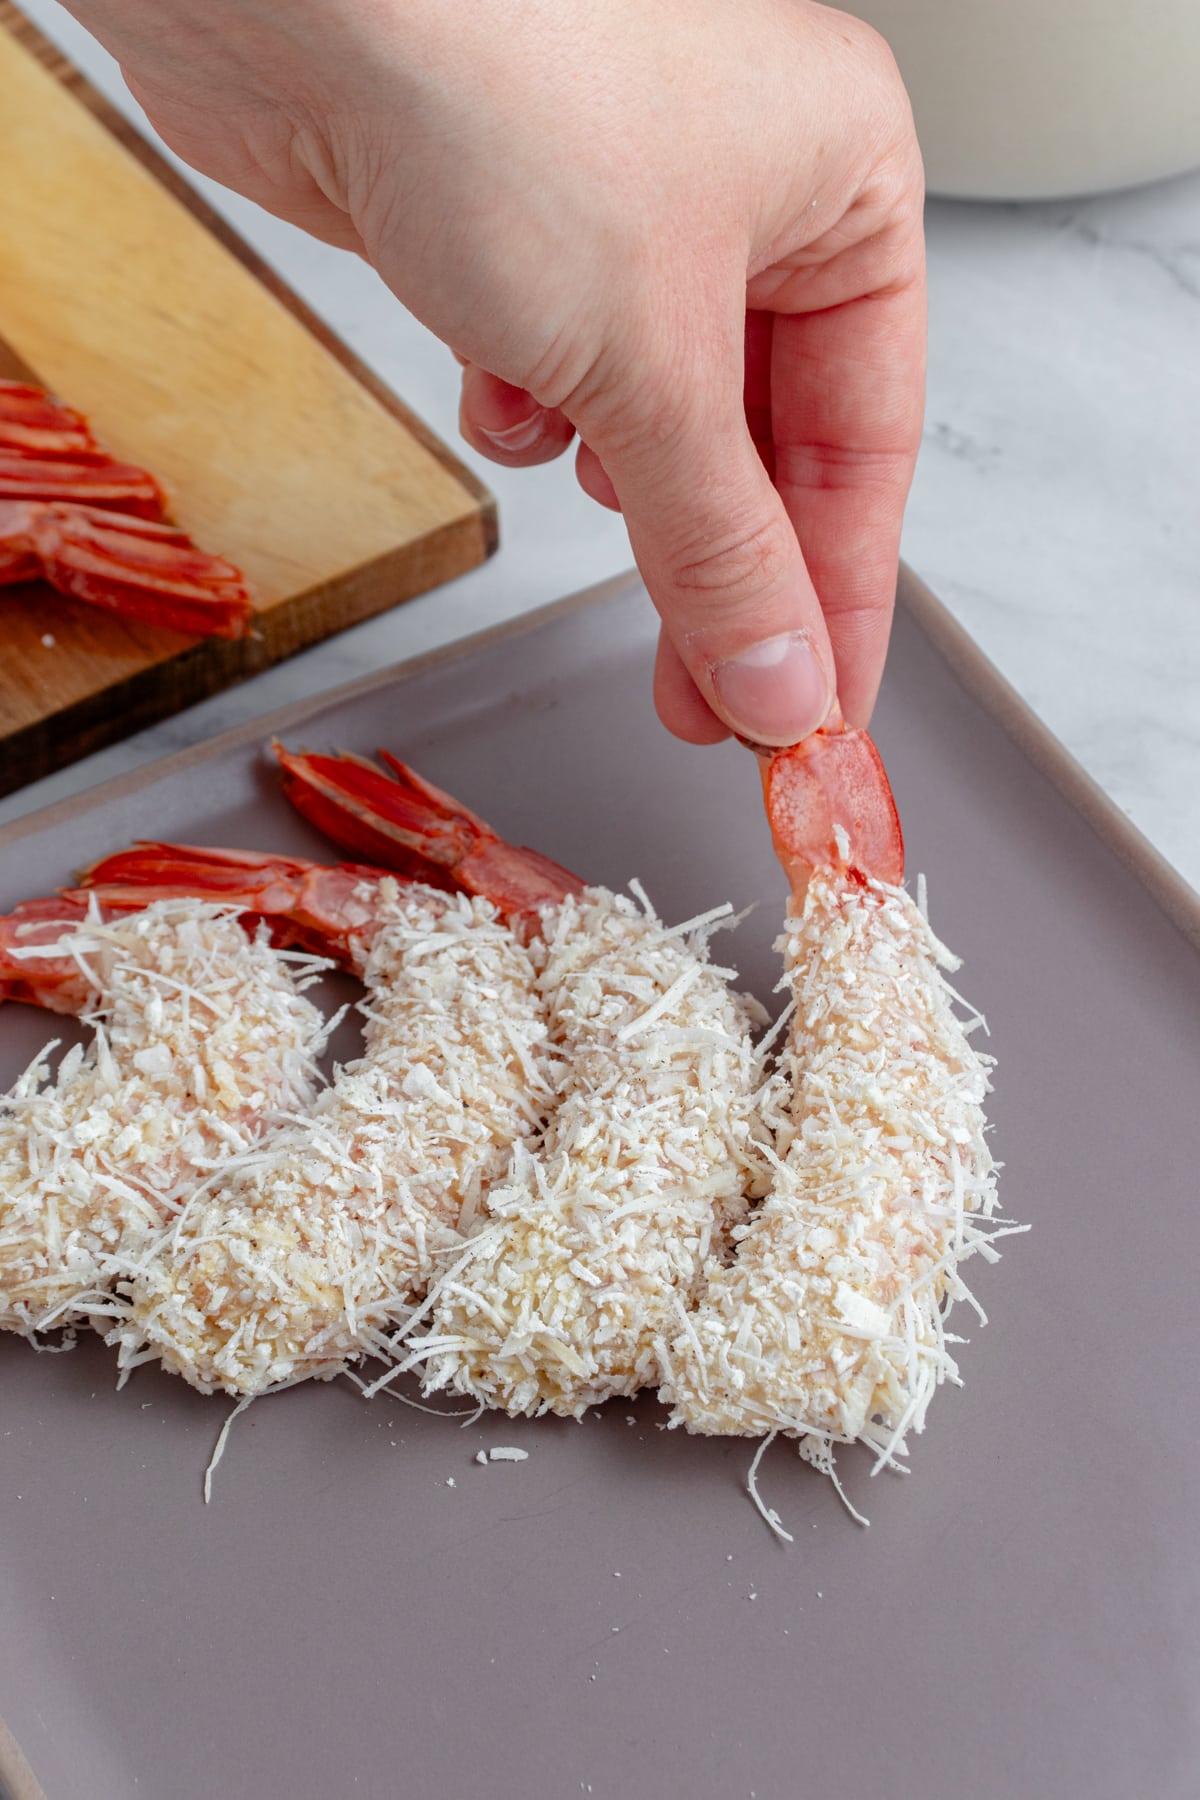 Breaded shrimp ready to fry.